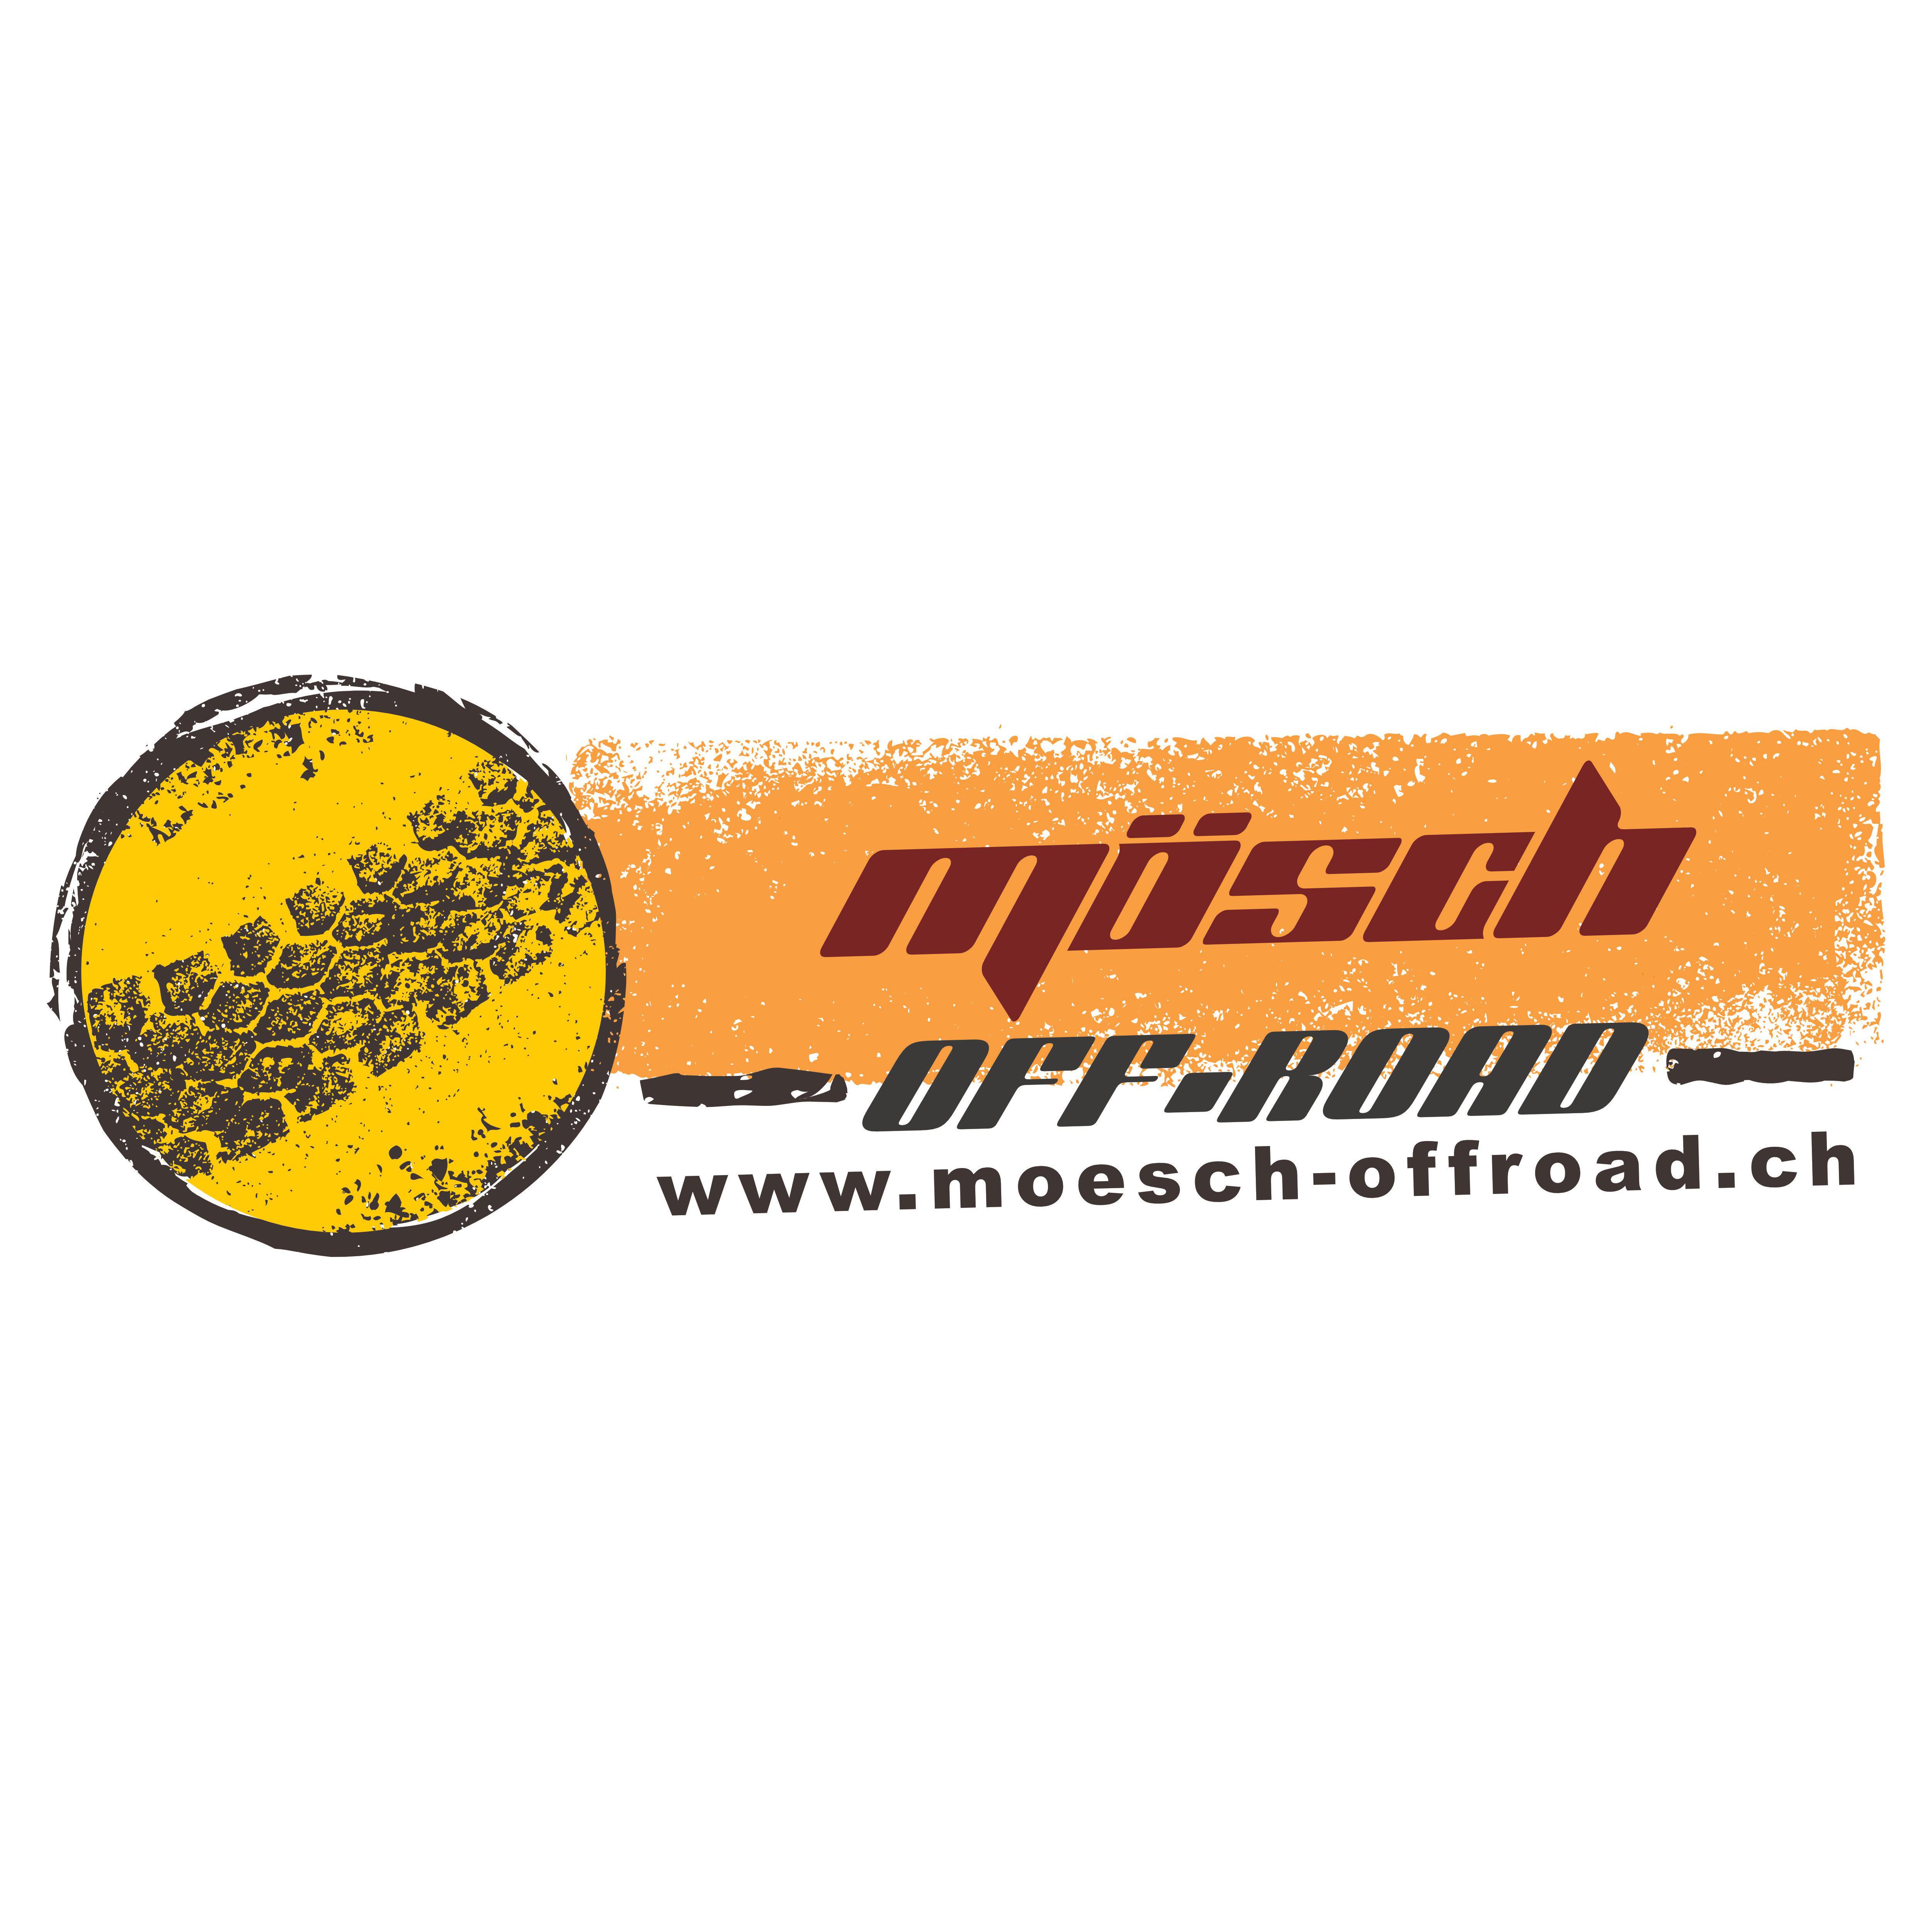 Offroad Garage Mösch